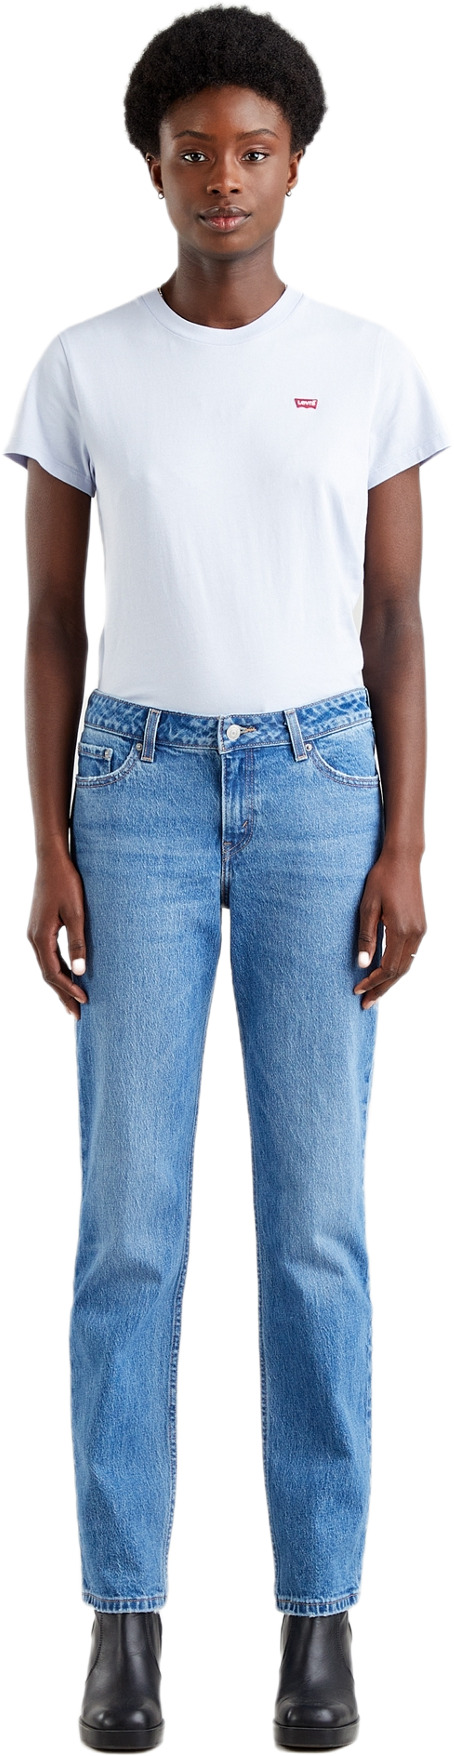 Джинсы Levis Women Low Pitch Straight Jeans (A1559-0002) купить за 7 755  руб. в интернет-магазине JNS